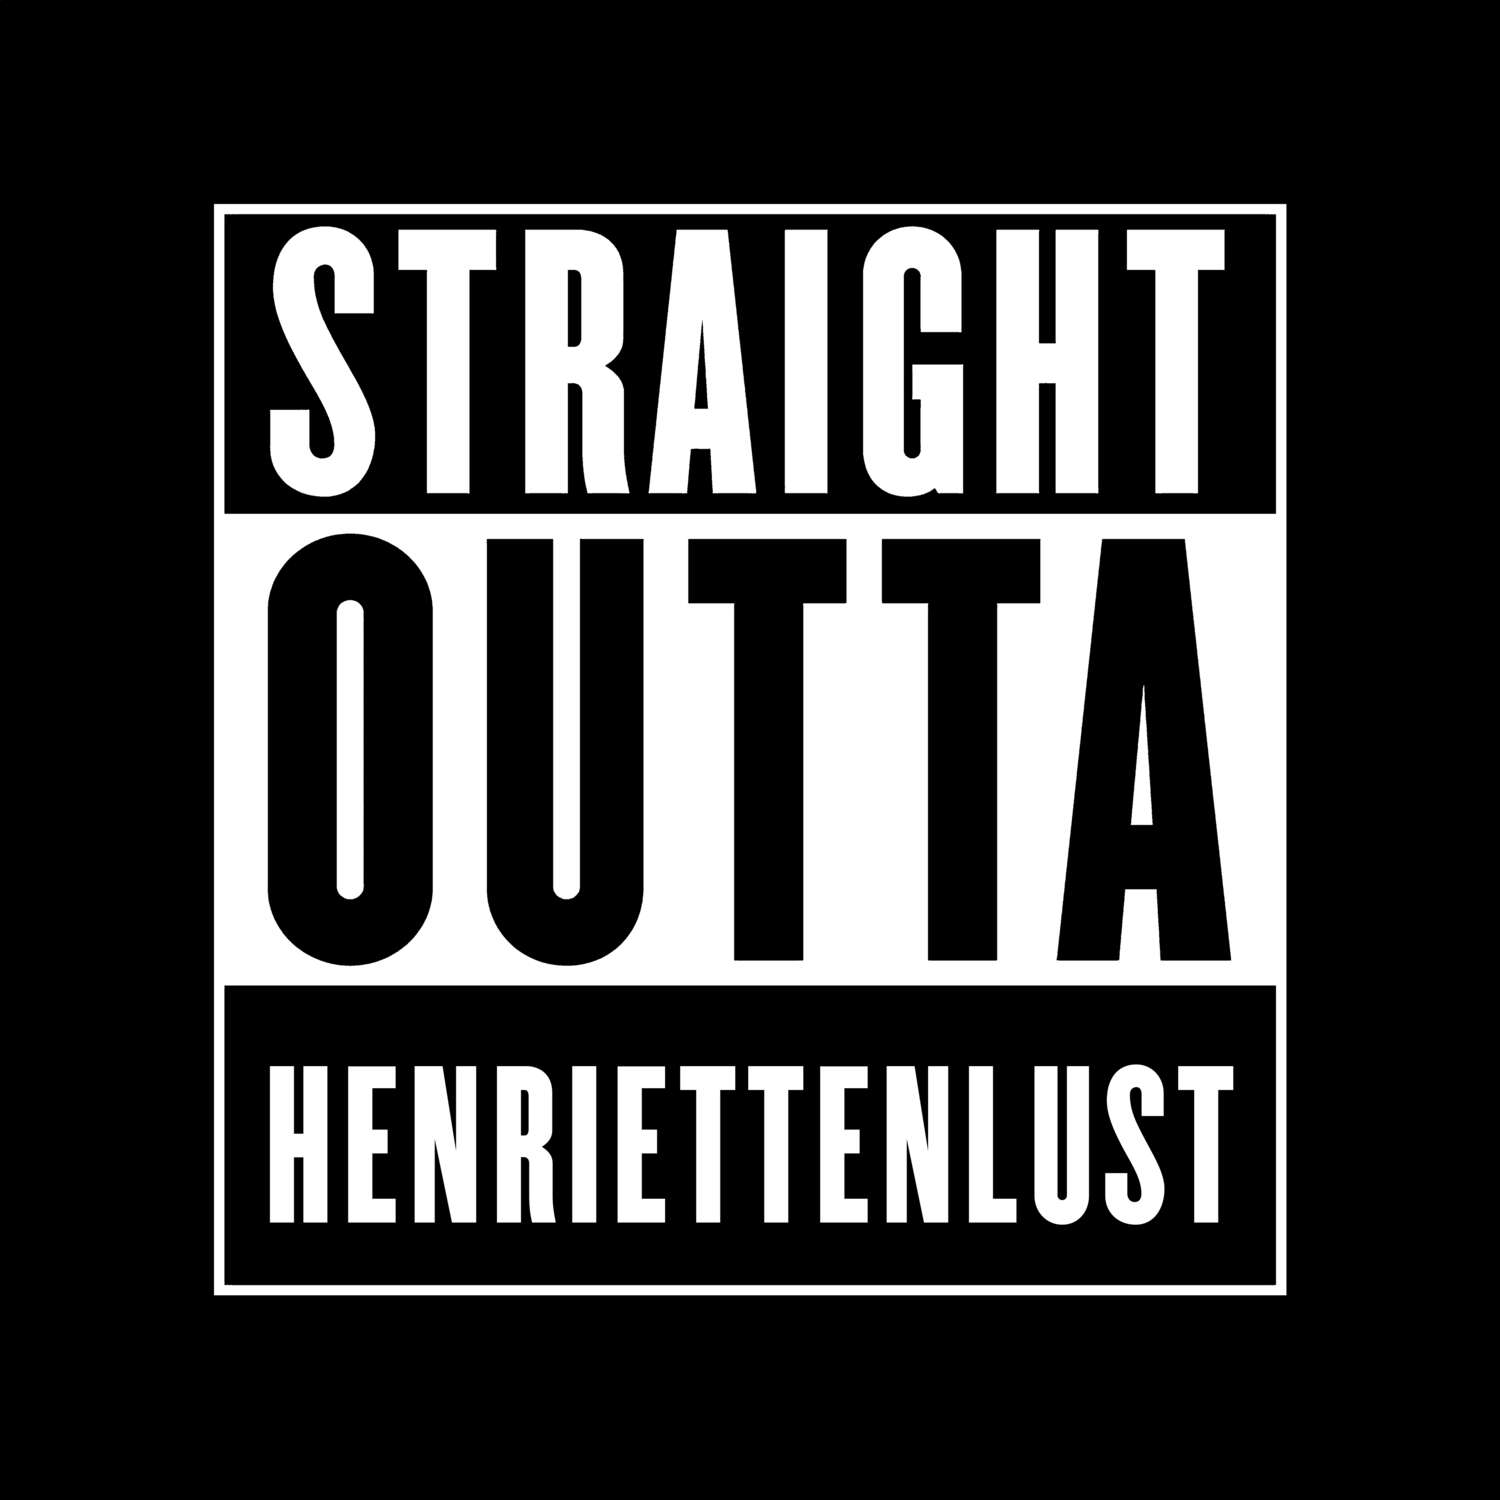 Henriettenlust T-Shirt »Straight Outta«